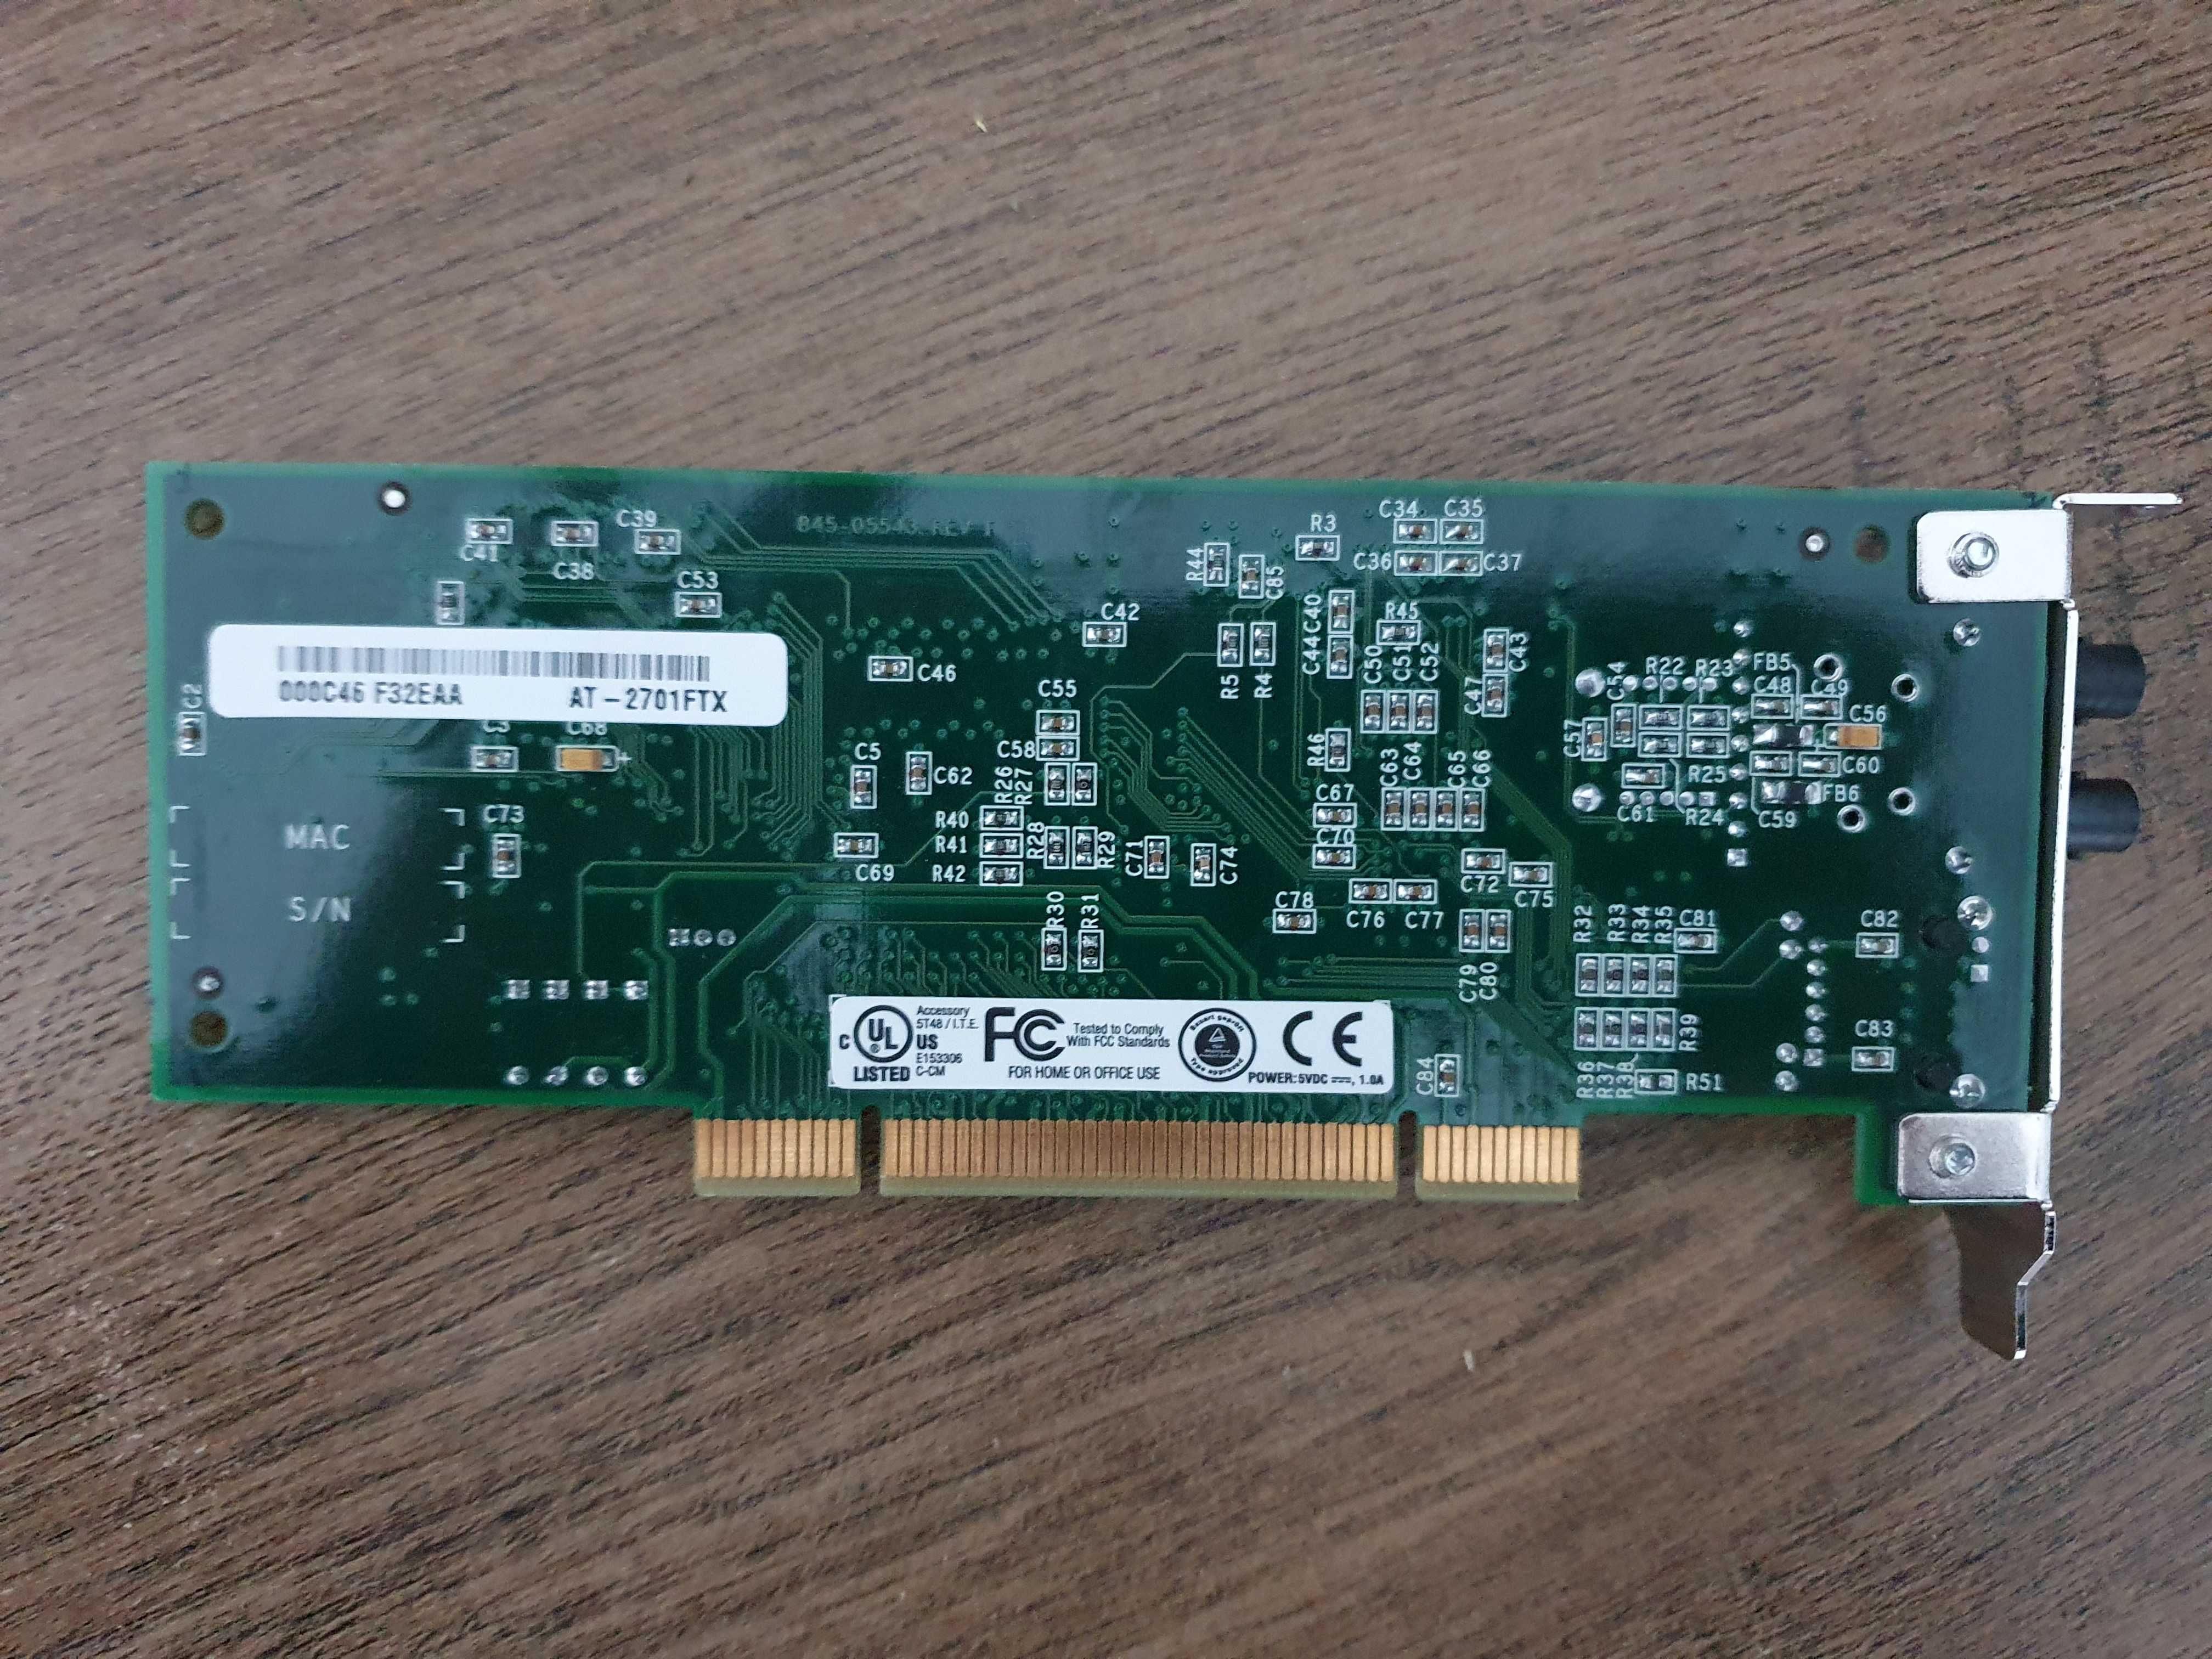 Placă de rețea fibră optică PCI Allied Telesis AT-2701FTX. Impecabilă!